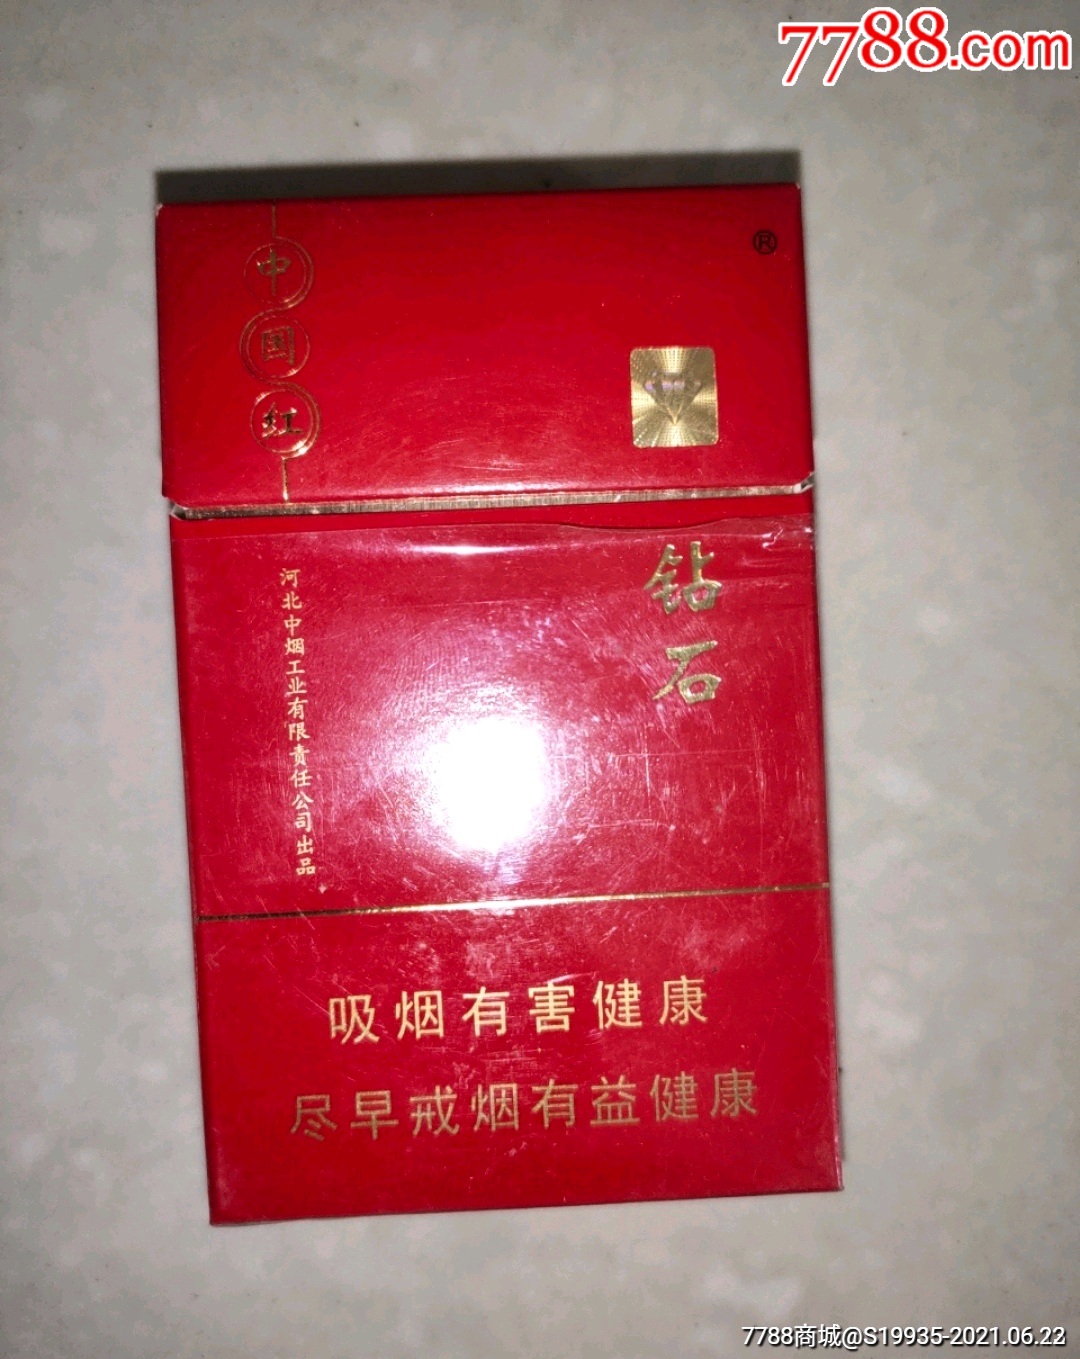 12版中国红【钻石】-价格:5元-se80994480-烟标/烟盒